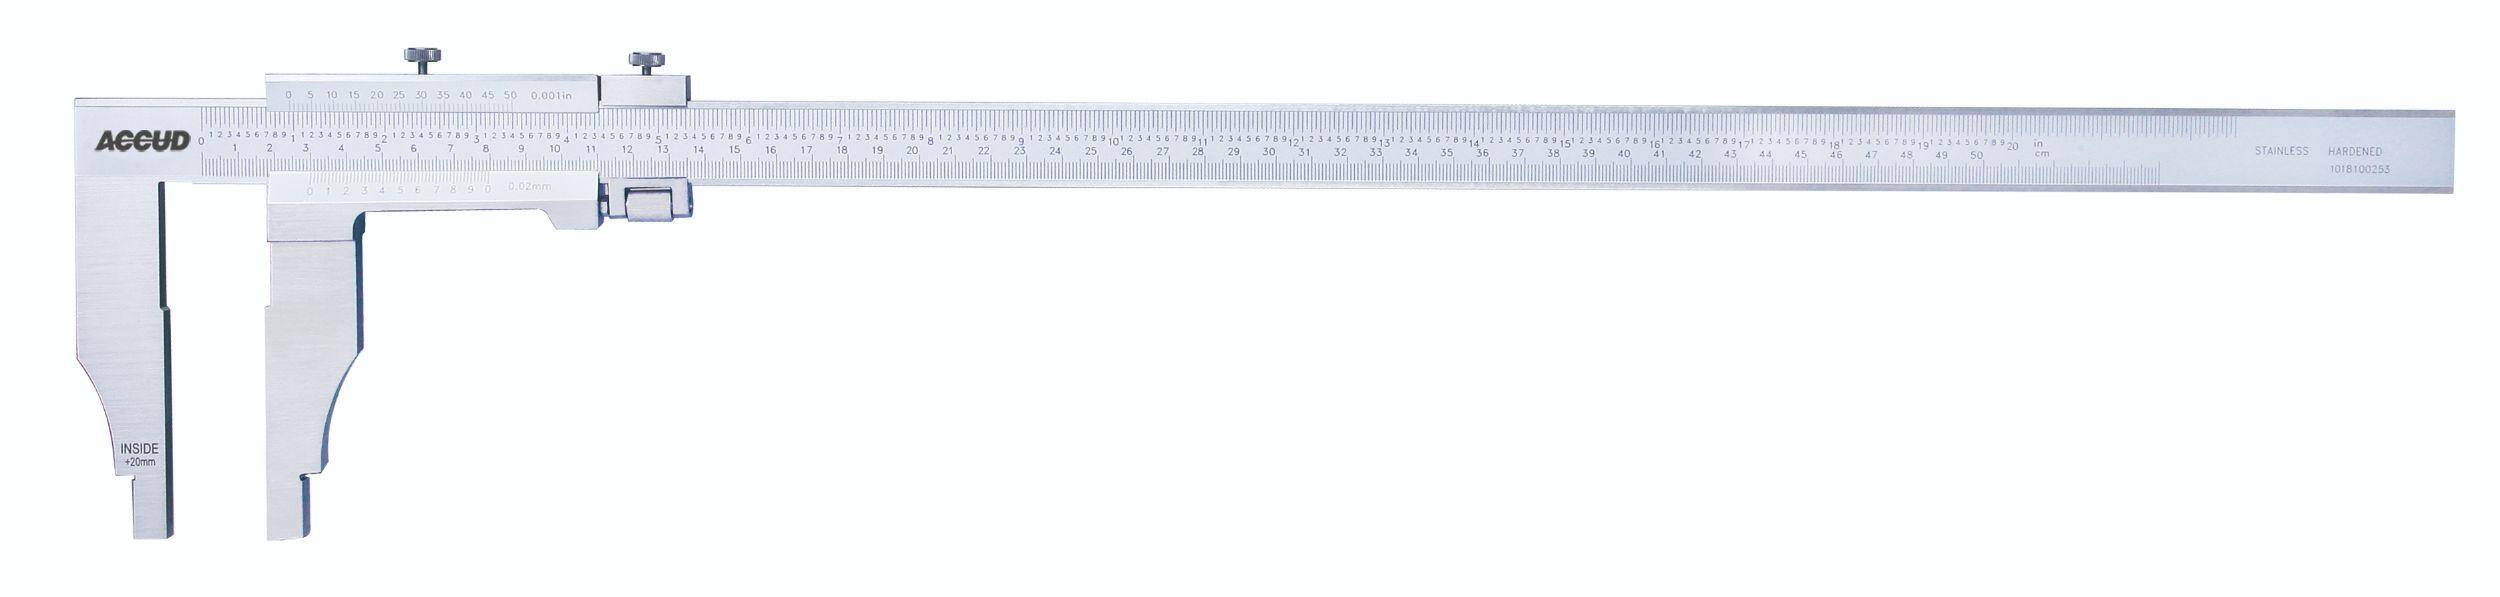 ACCUD suwmiarka analogowa 500/0.02 mm jednostronna długość szczęk 100 mm 128-020-21